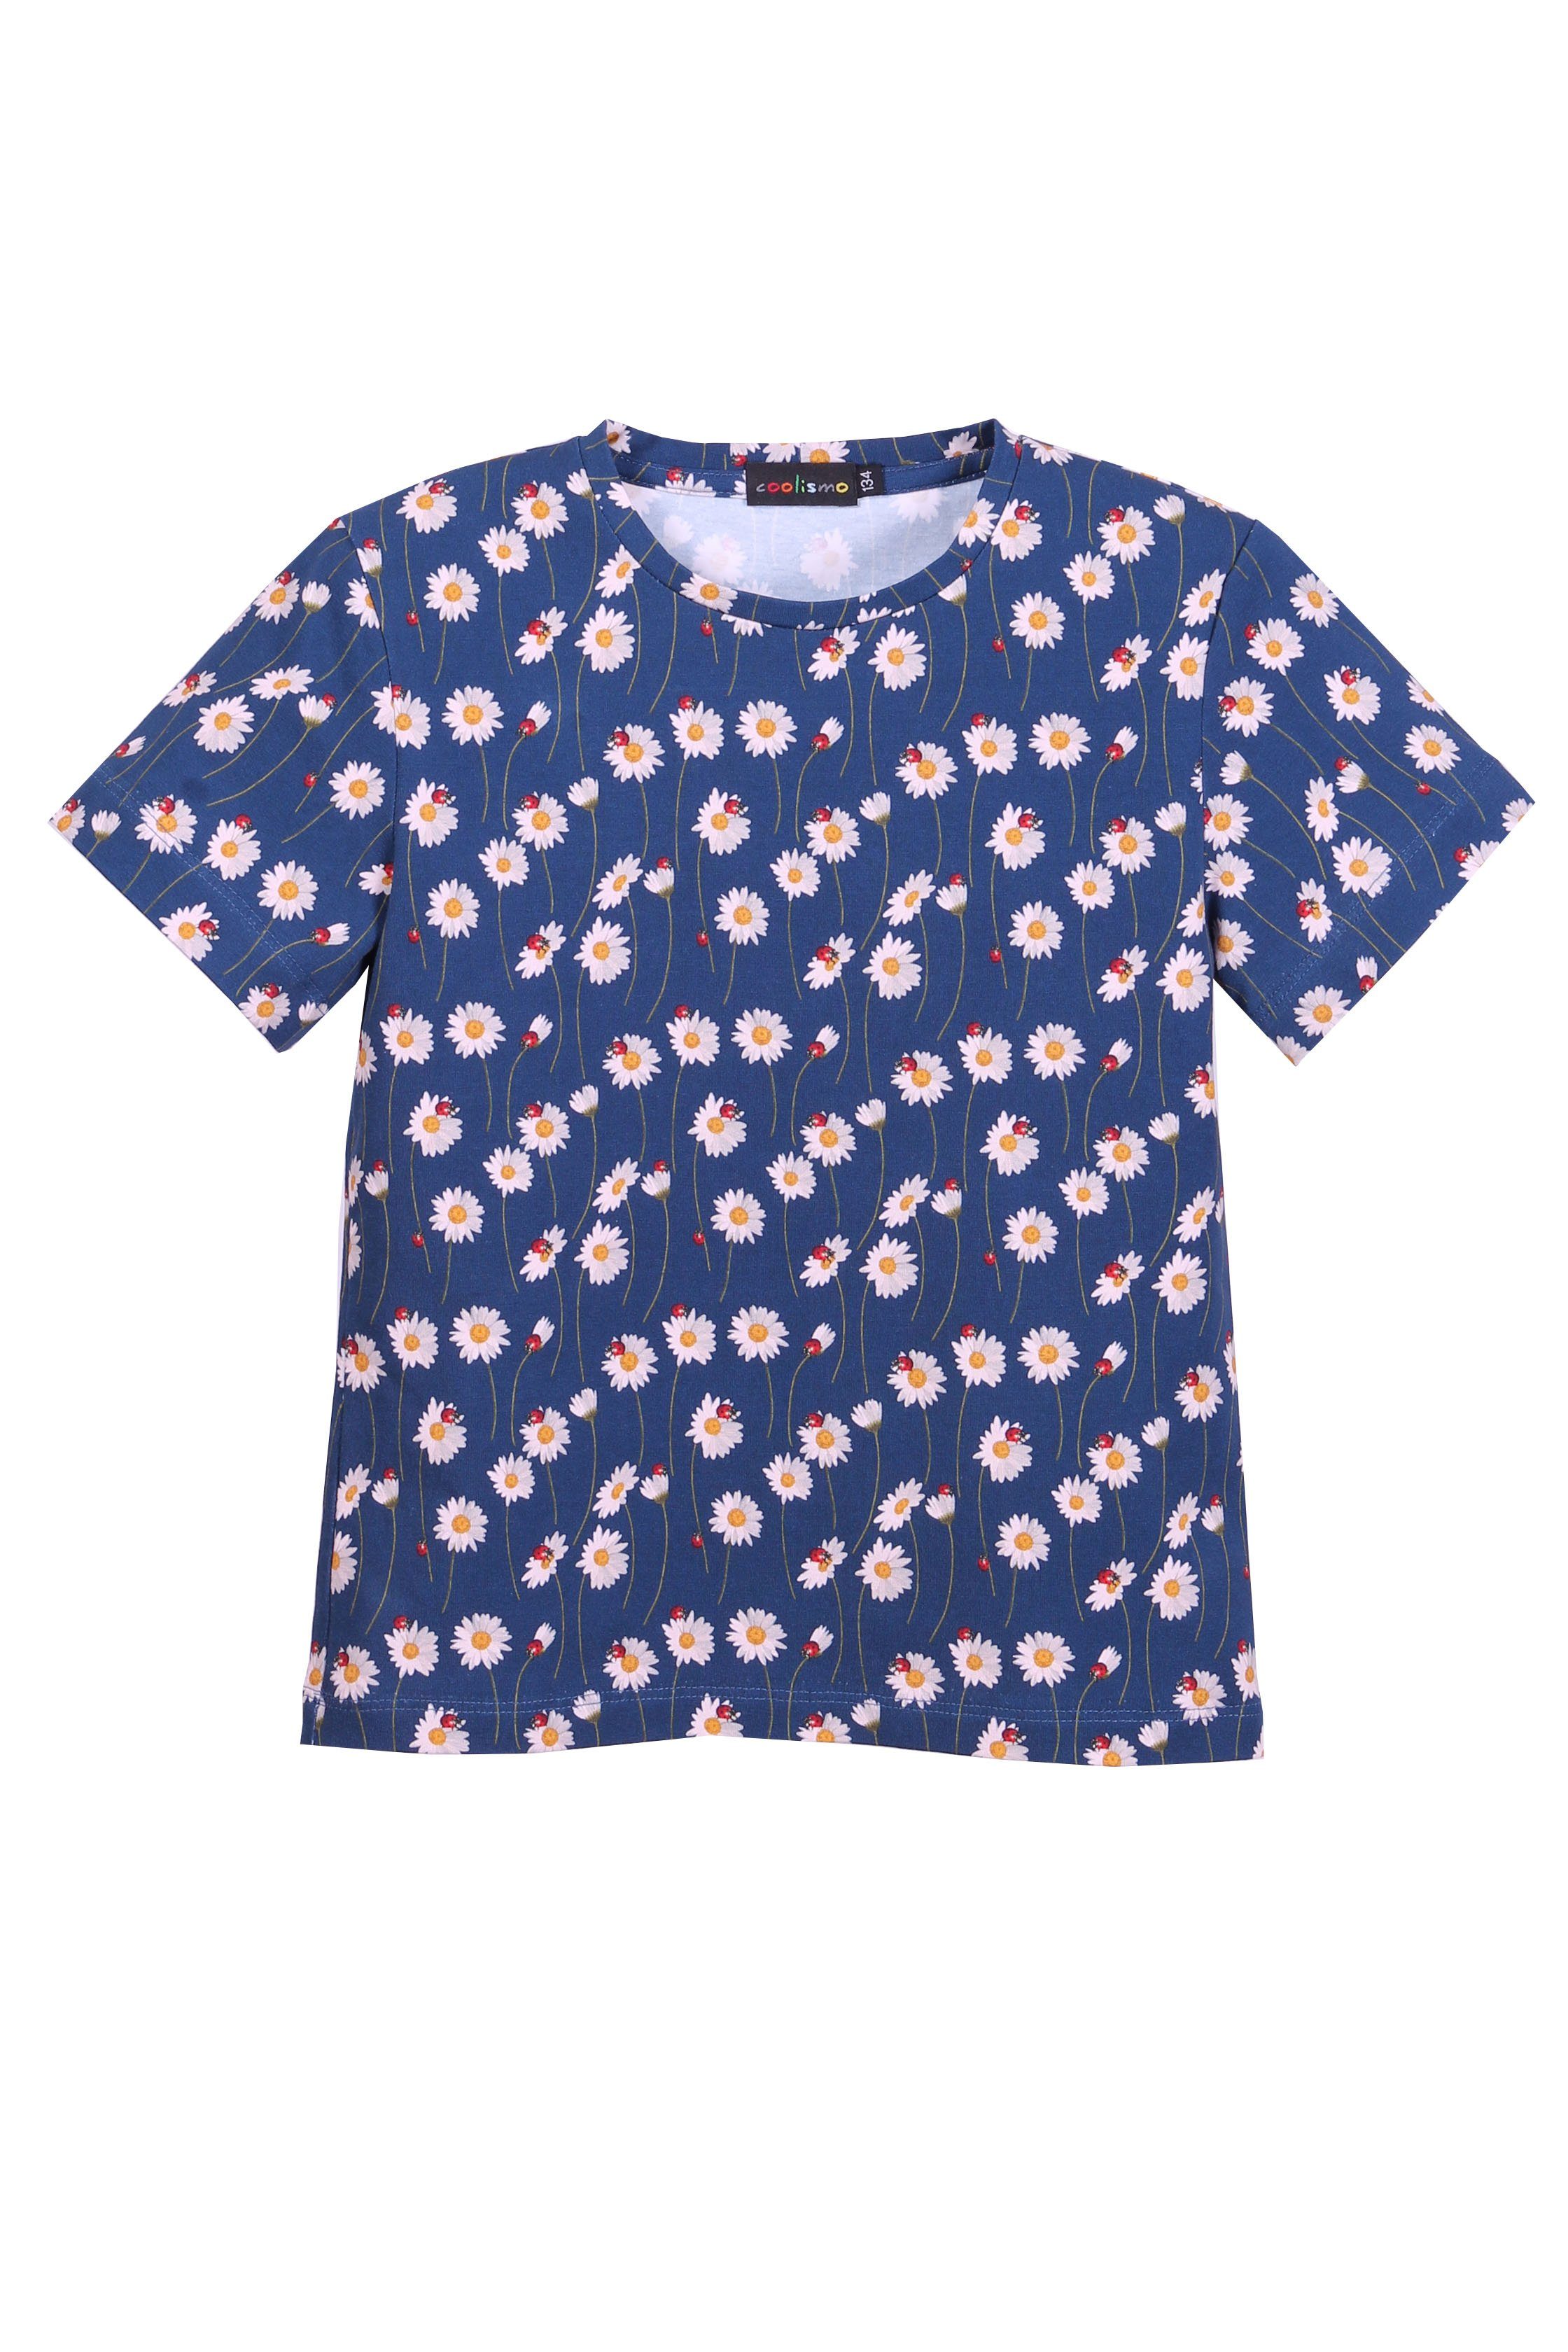 Mädchen Rundhalsausschnitt, Alloverprint, Gänseblümchen Baumwolle Print-Shirt T-Shirt coolismo für mit